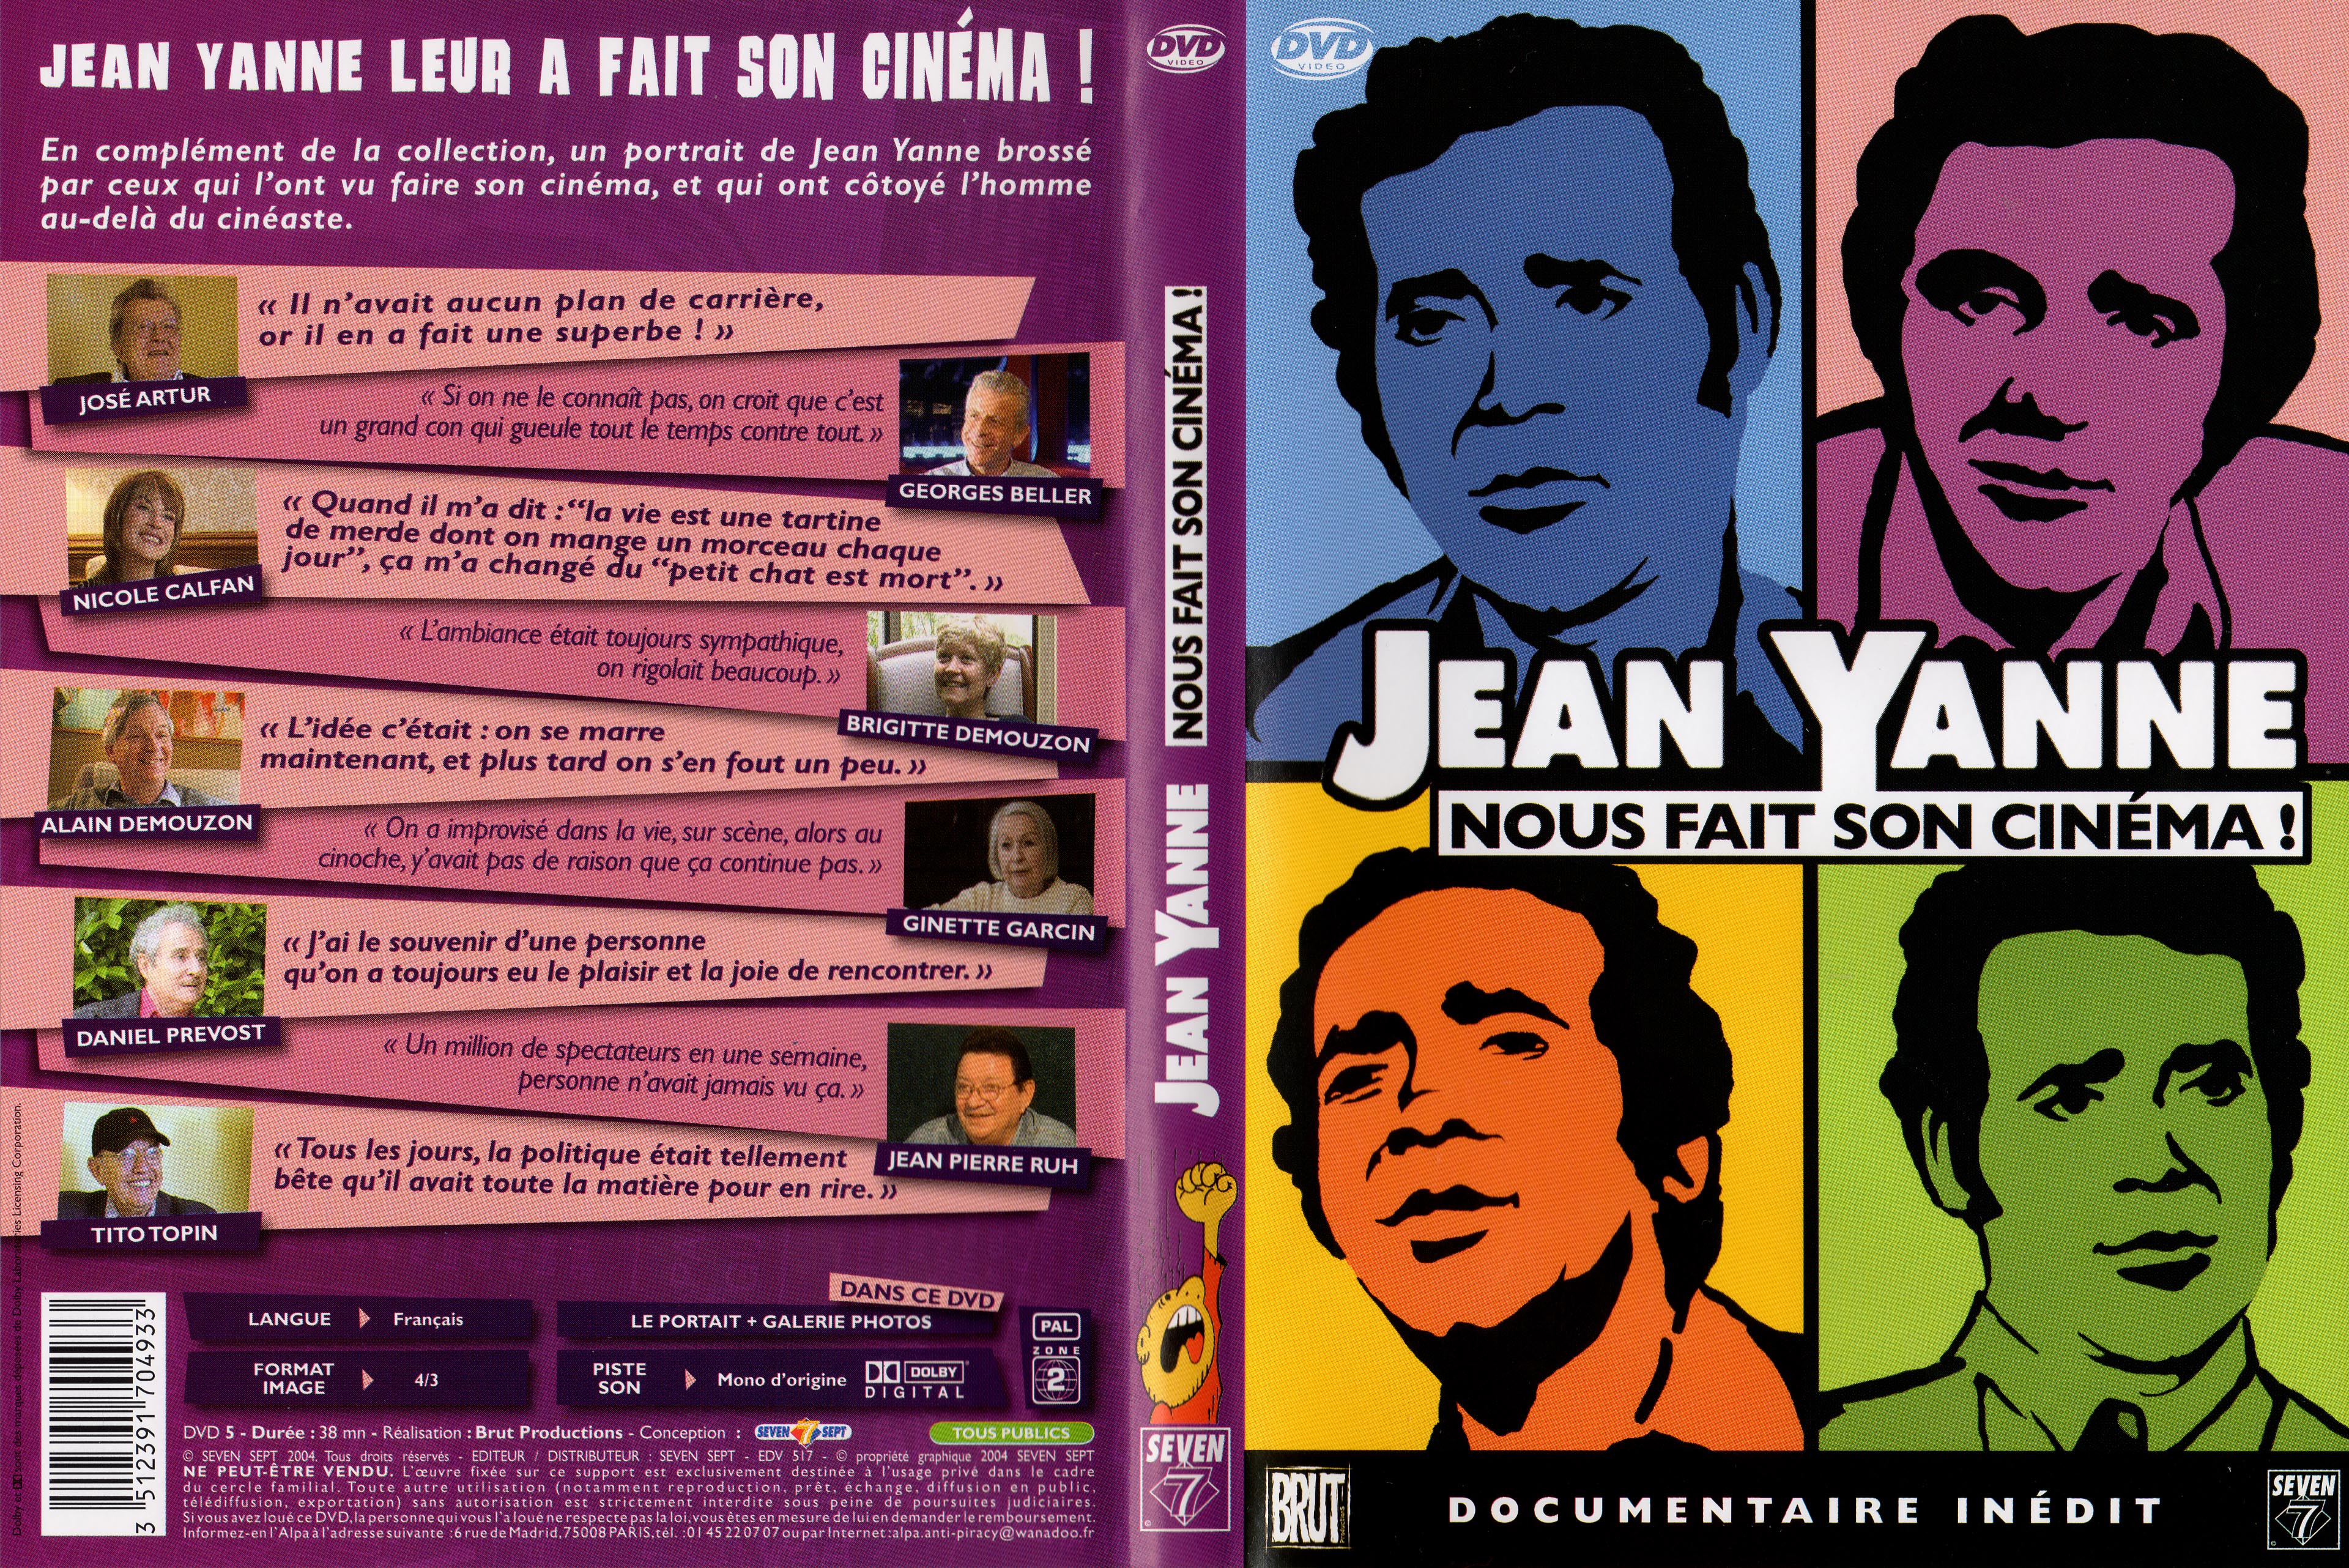 Jaquette DVD Jean Yanne nous fait son cinema